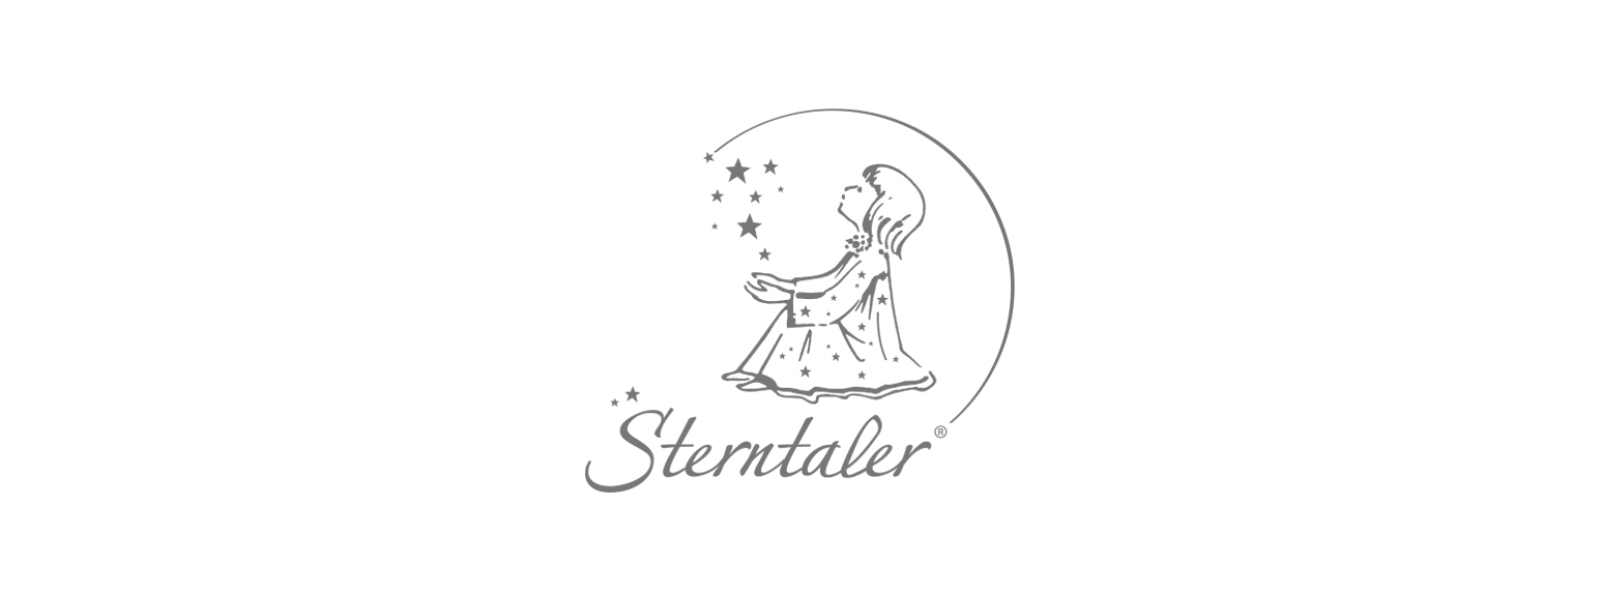 Sterntaler personalisiert von Schmatzepuffer